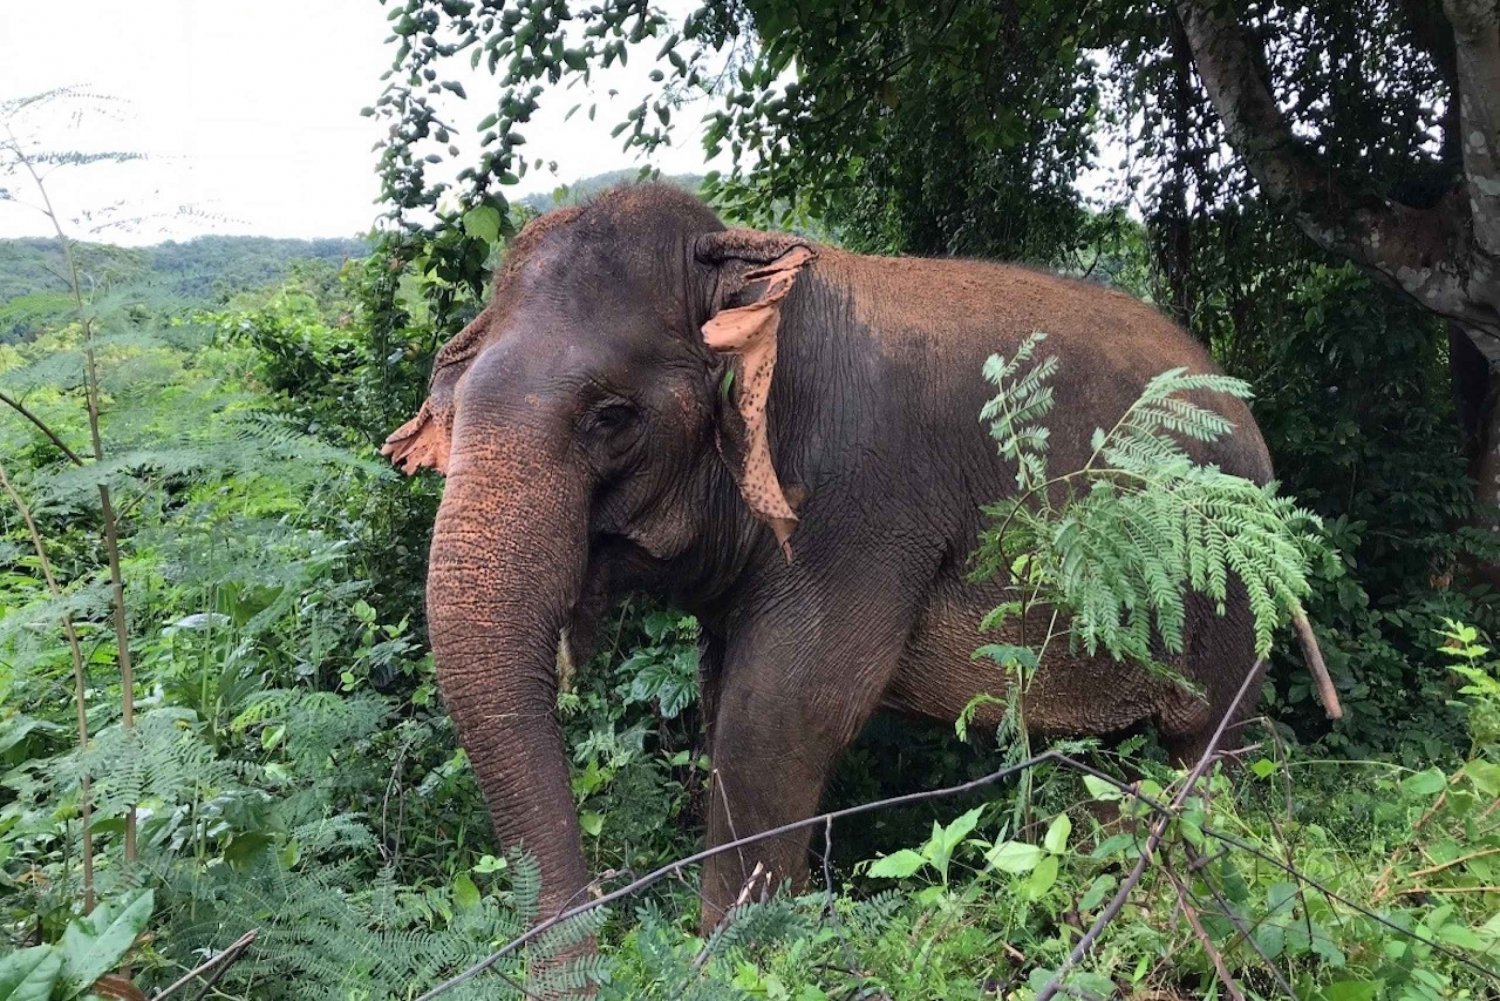 From Bangkok: Pattaya Ethical Elephant Sanctuary Interactive